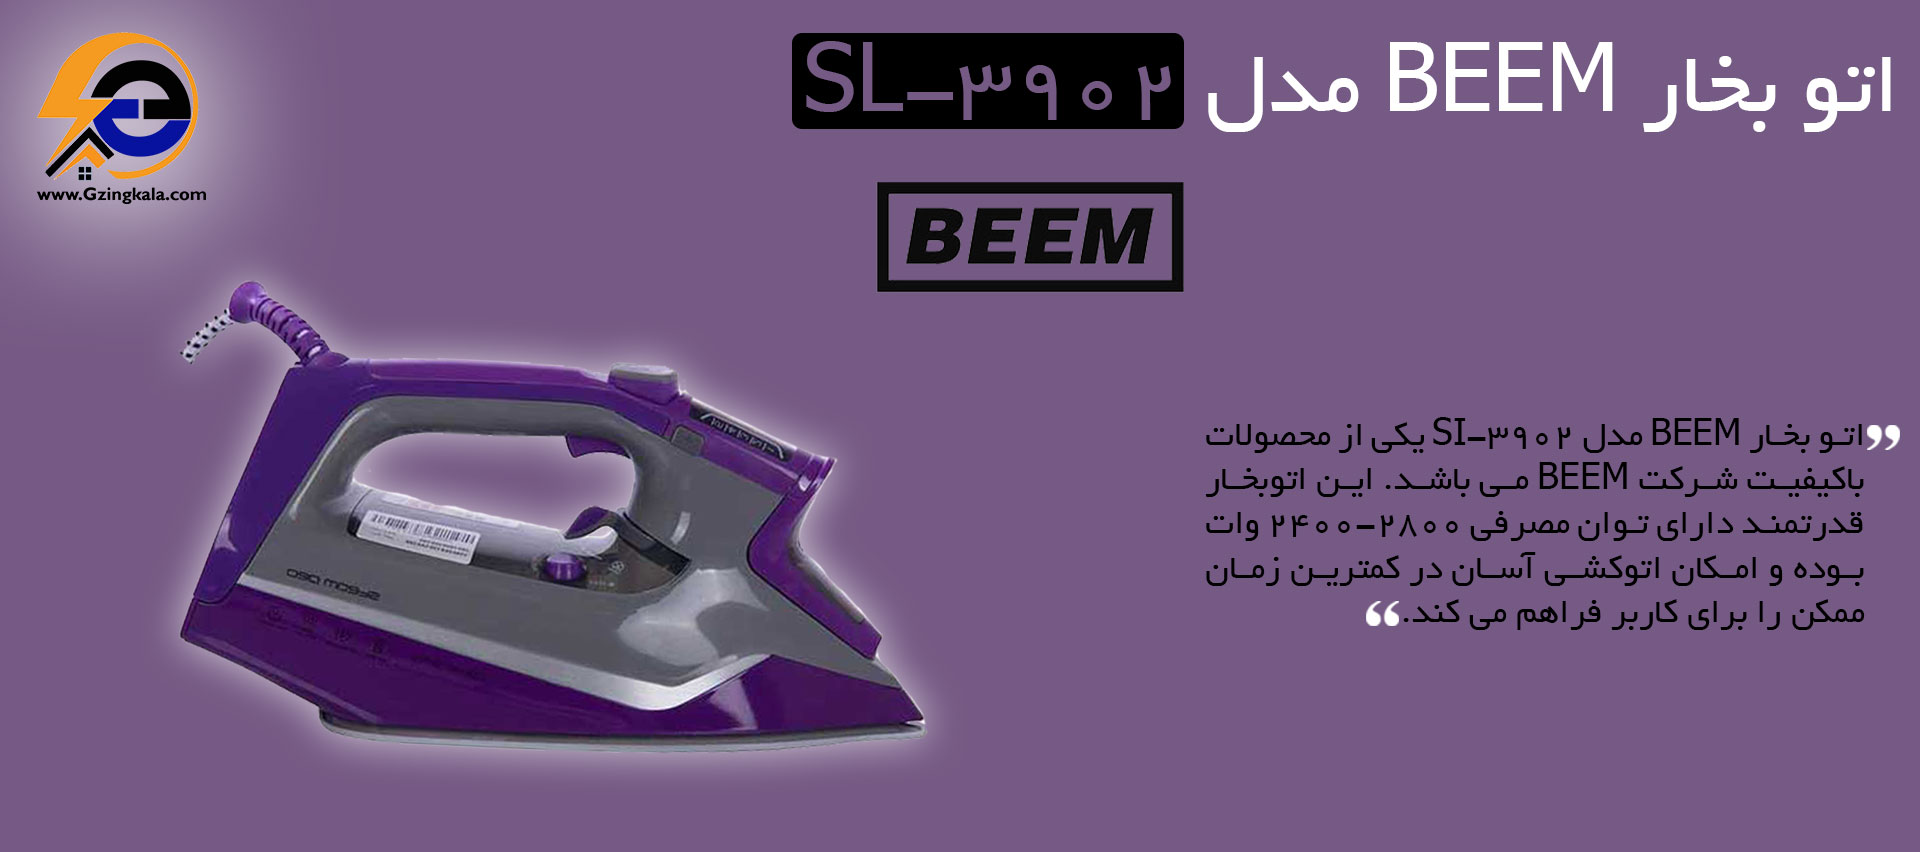 اتو بخار BEEM مدل Sl-3902